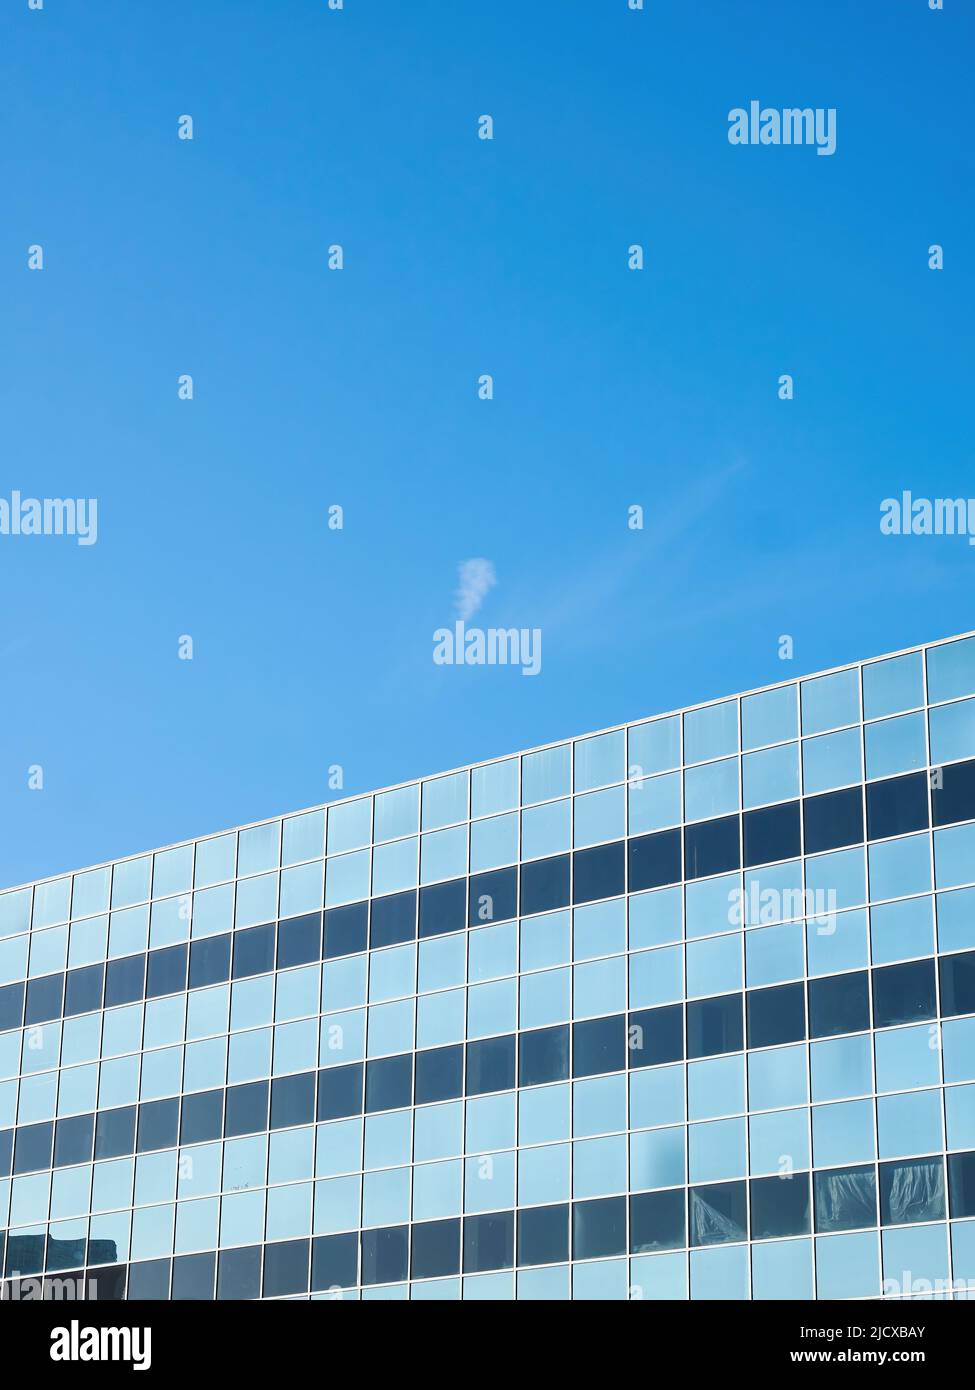 Una meditación abstracta sobre la vida de oficina - un cielo azul iluminado por el sol aparentemente enjaulado por las ventanas del edificio que lo reflejan, con una nube sobre el cielo abierto. Foto de stock